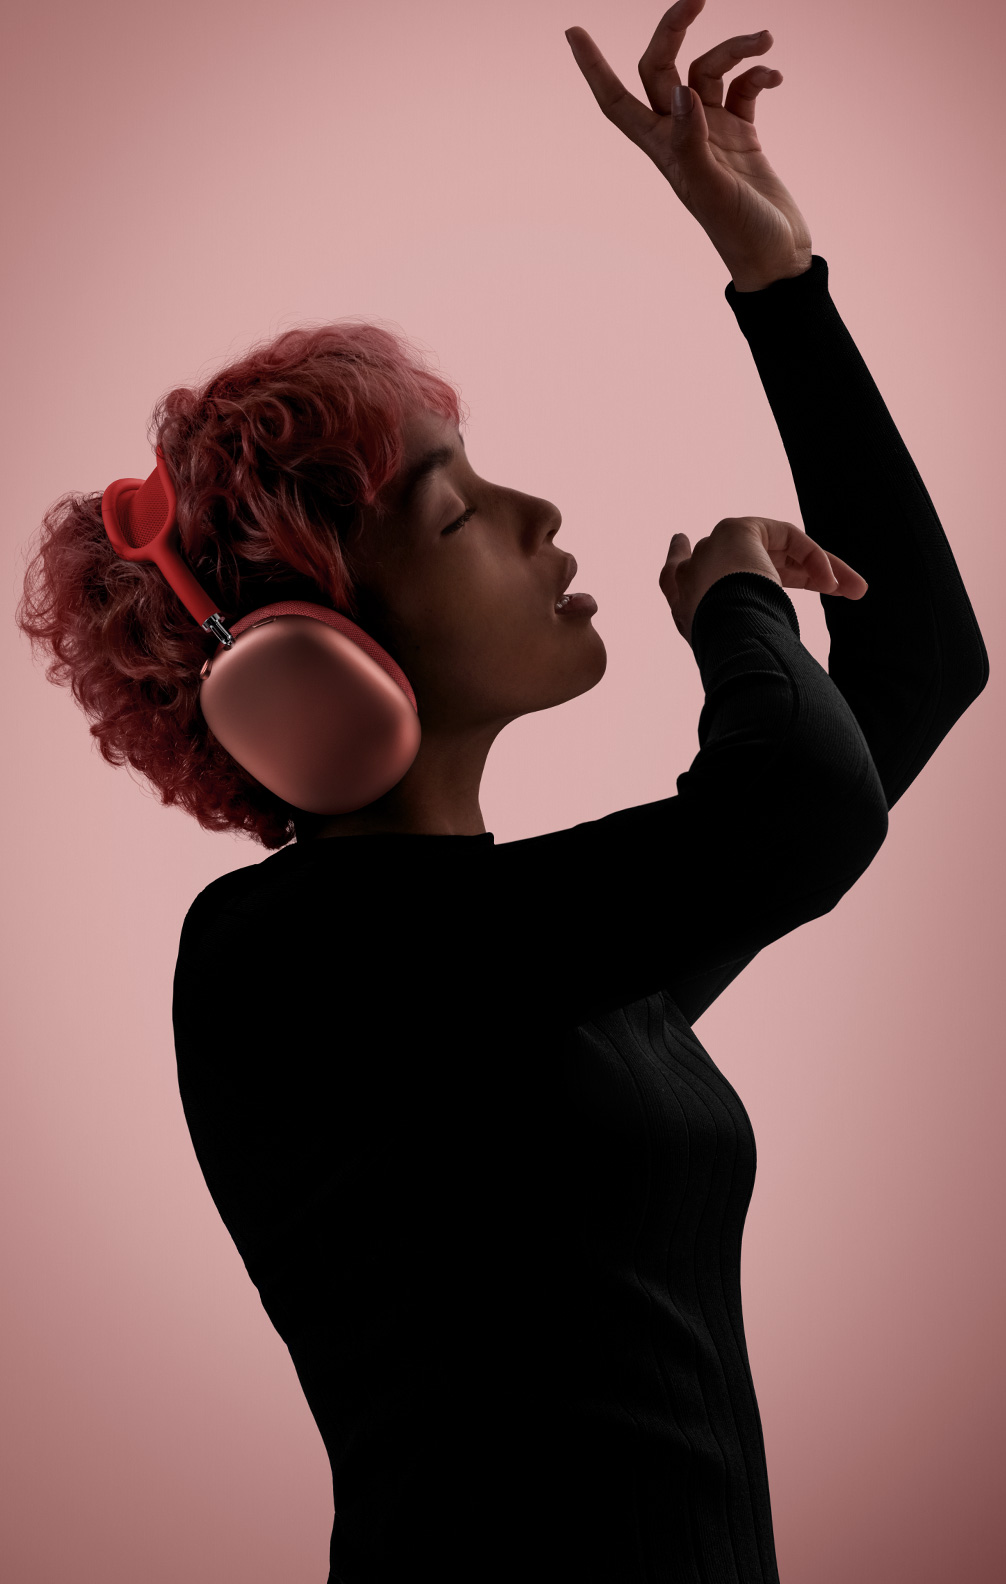 Bočni prikaz osobe u pokretu, zatvorenih očiju i podignutih ruku, koja nosi ružičaste slušalice AirPods Max.